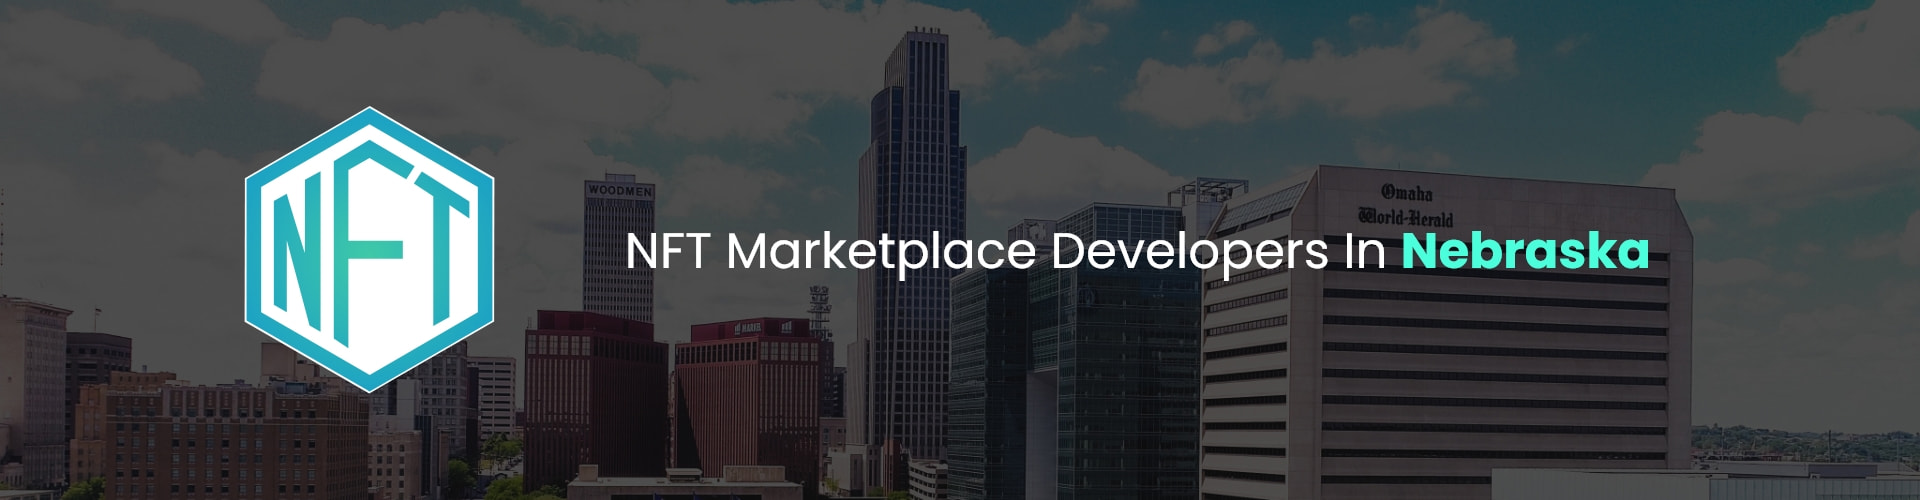 hire nft marketplace developers in nebraska